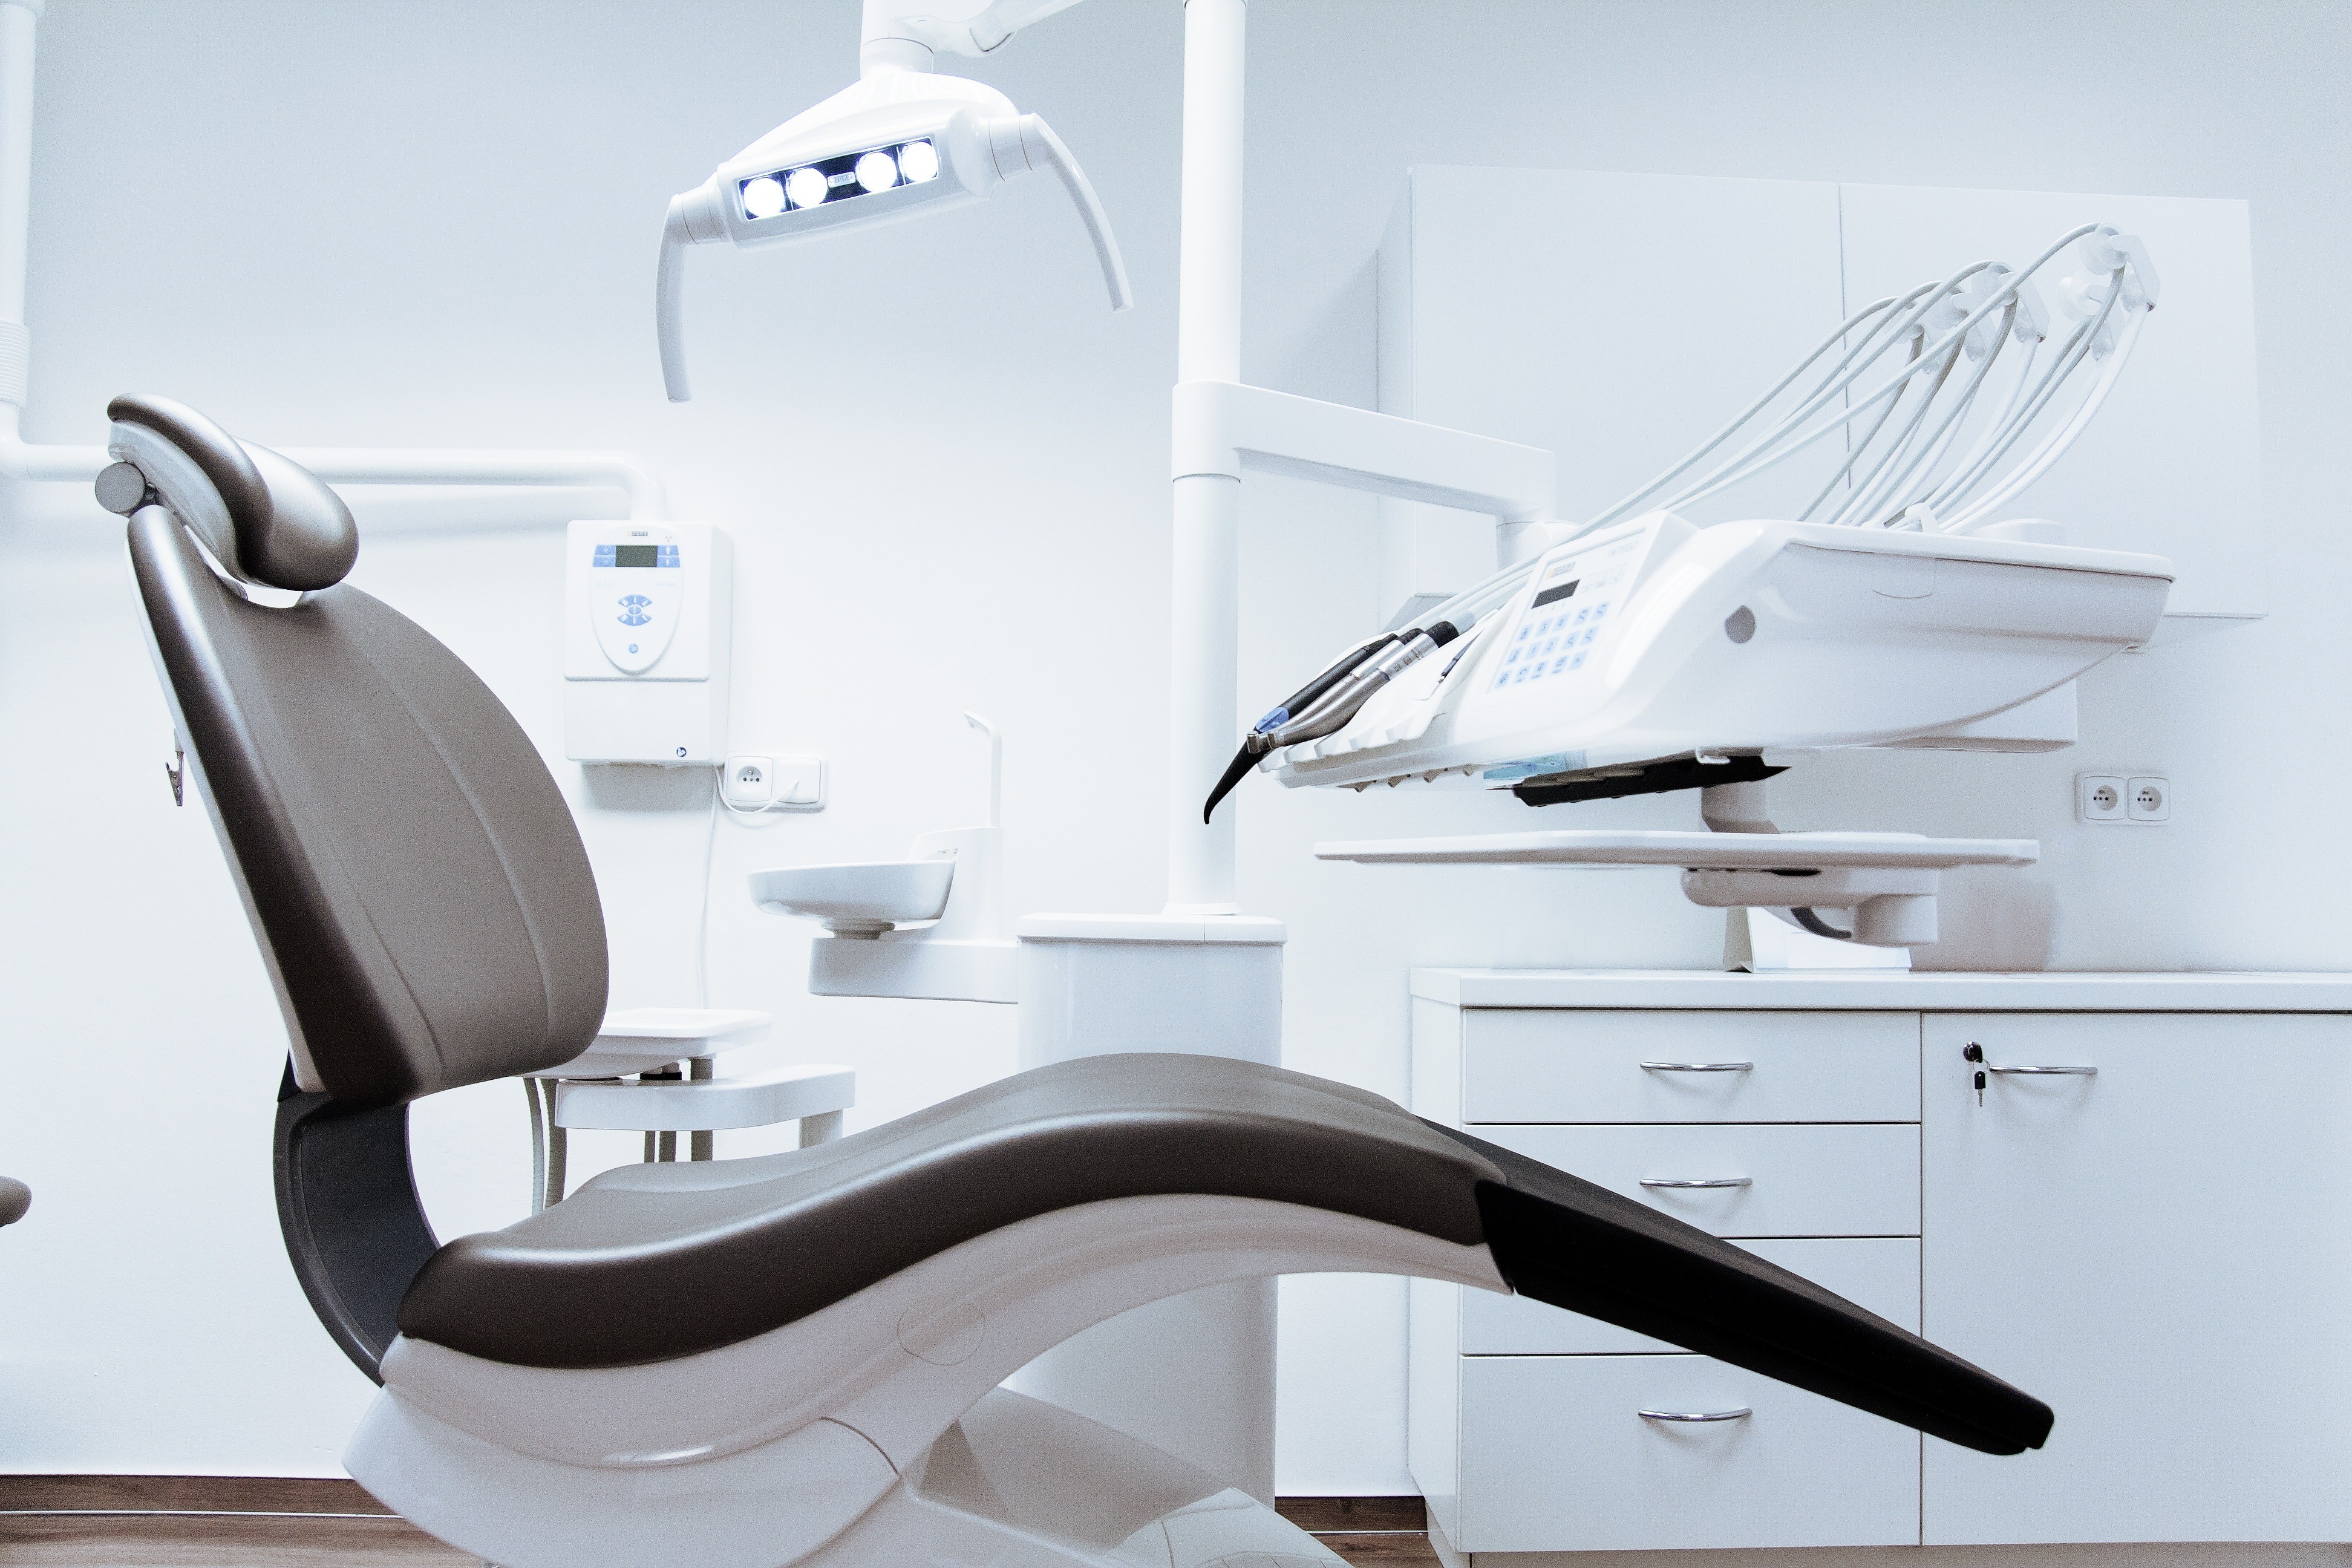 Спокойствие, только спокойствие: как расслабиться в кресле стоматолога